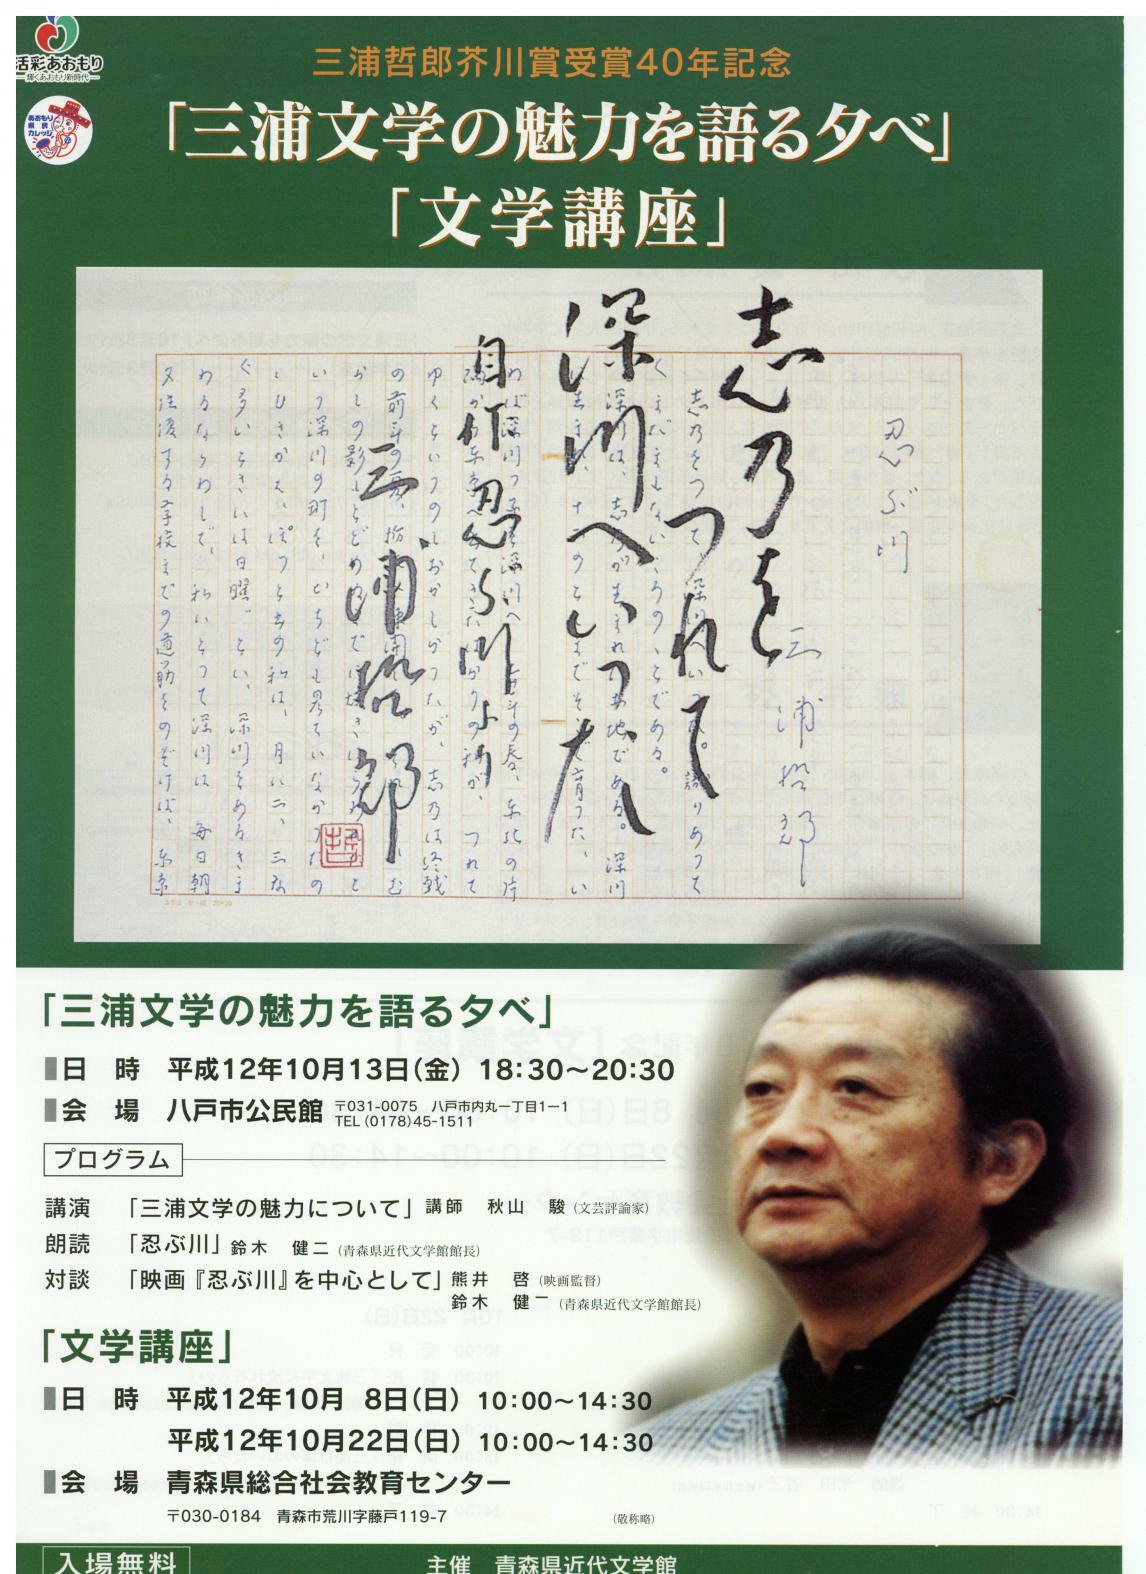 三浦哲郎芥川賞受賞四十年記念展フライヤーの画像